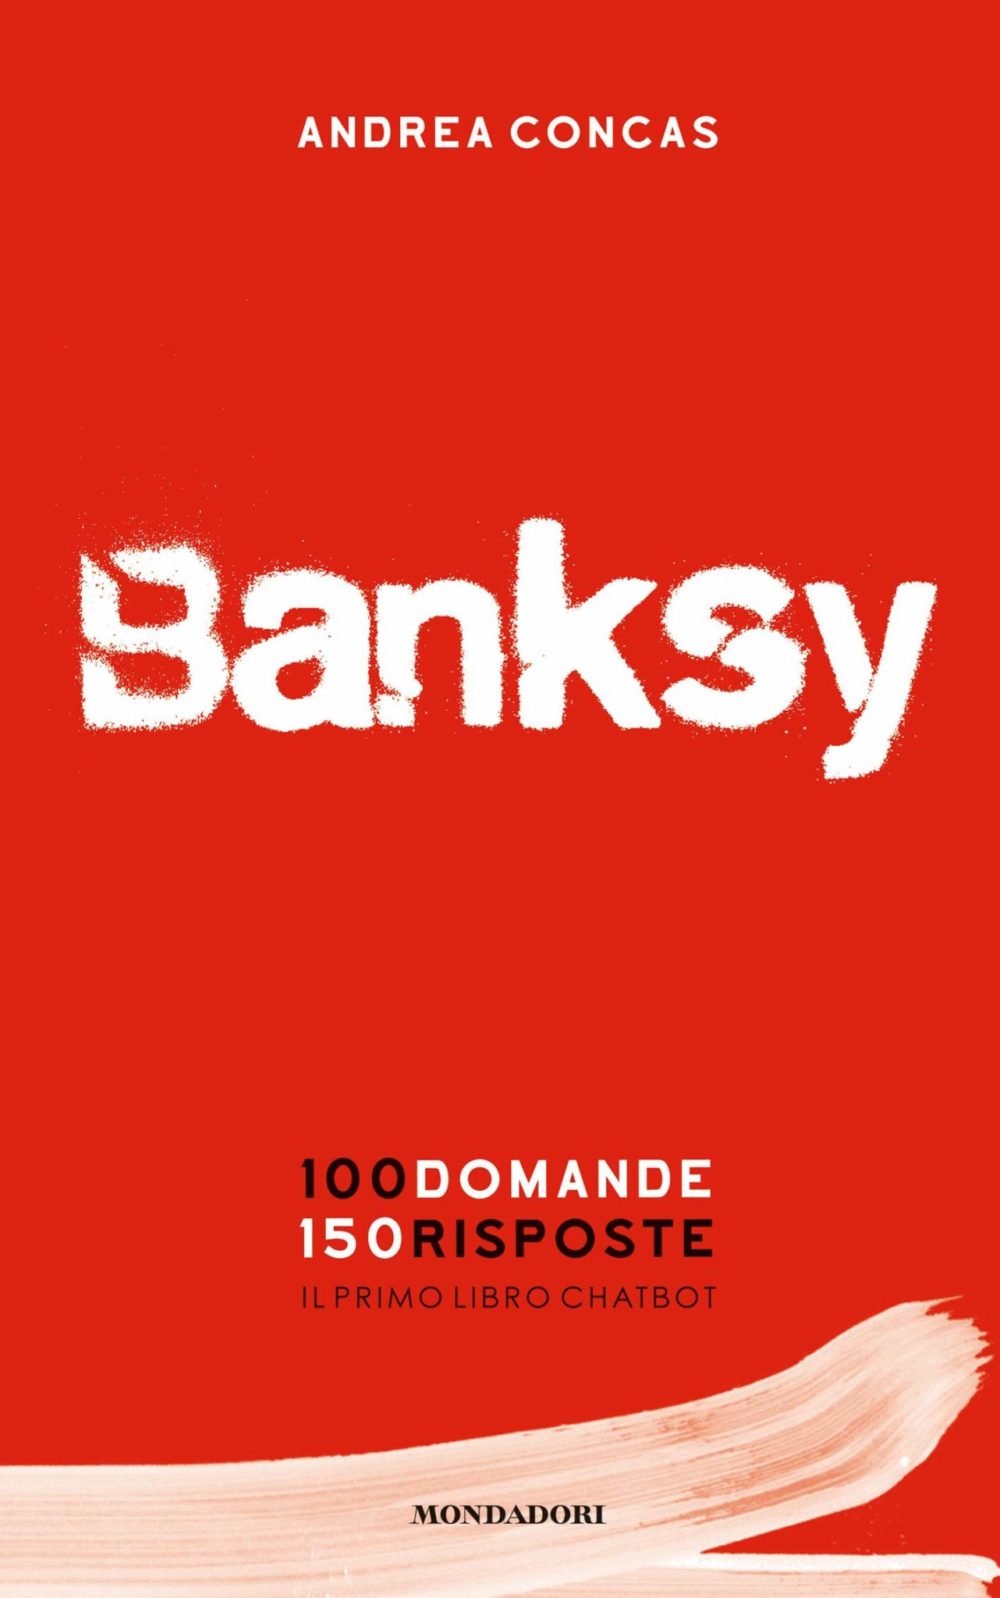 Recensione di Banksy – Andrea Concas